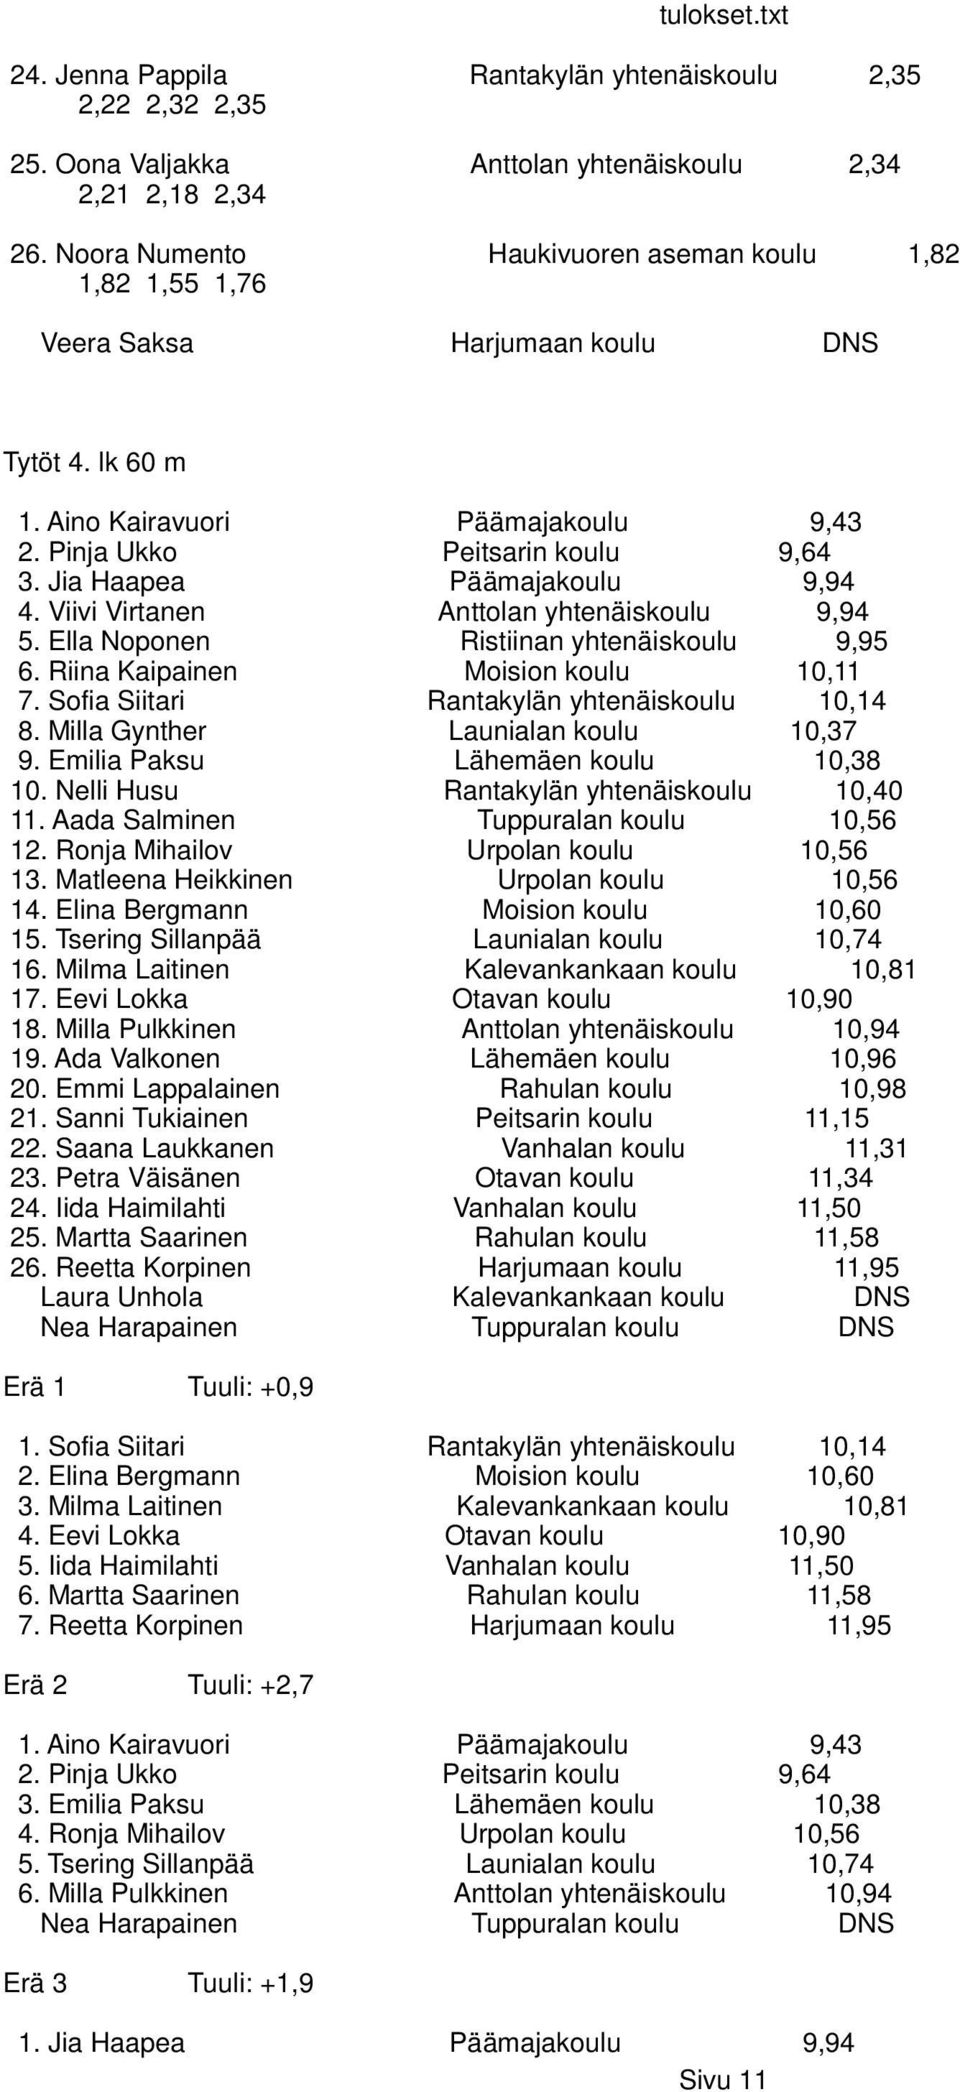 Jia Haapea Päämajakoulu 9,94 4. Viivi Virtanen Anttolan yhtenäiskoulu 9,94 5. Ella Noponen Ristiinan yhtenäiskoulu 9,95 6. Riina Kaipainen Moision koulu 10,11 7.